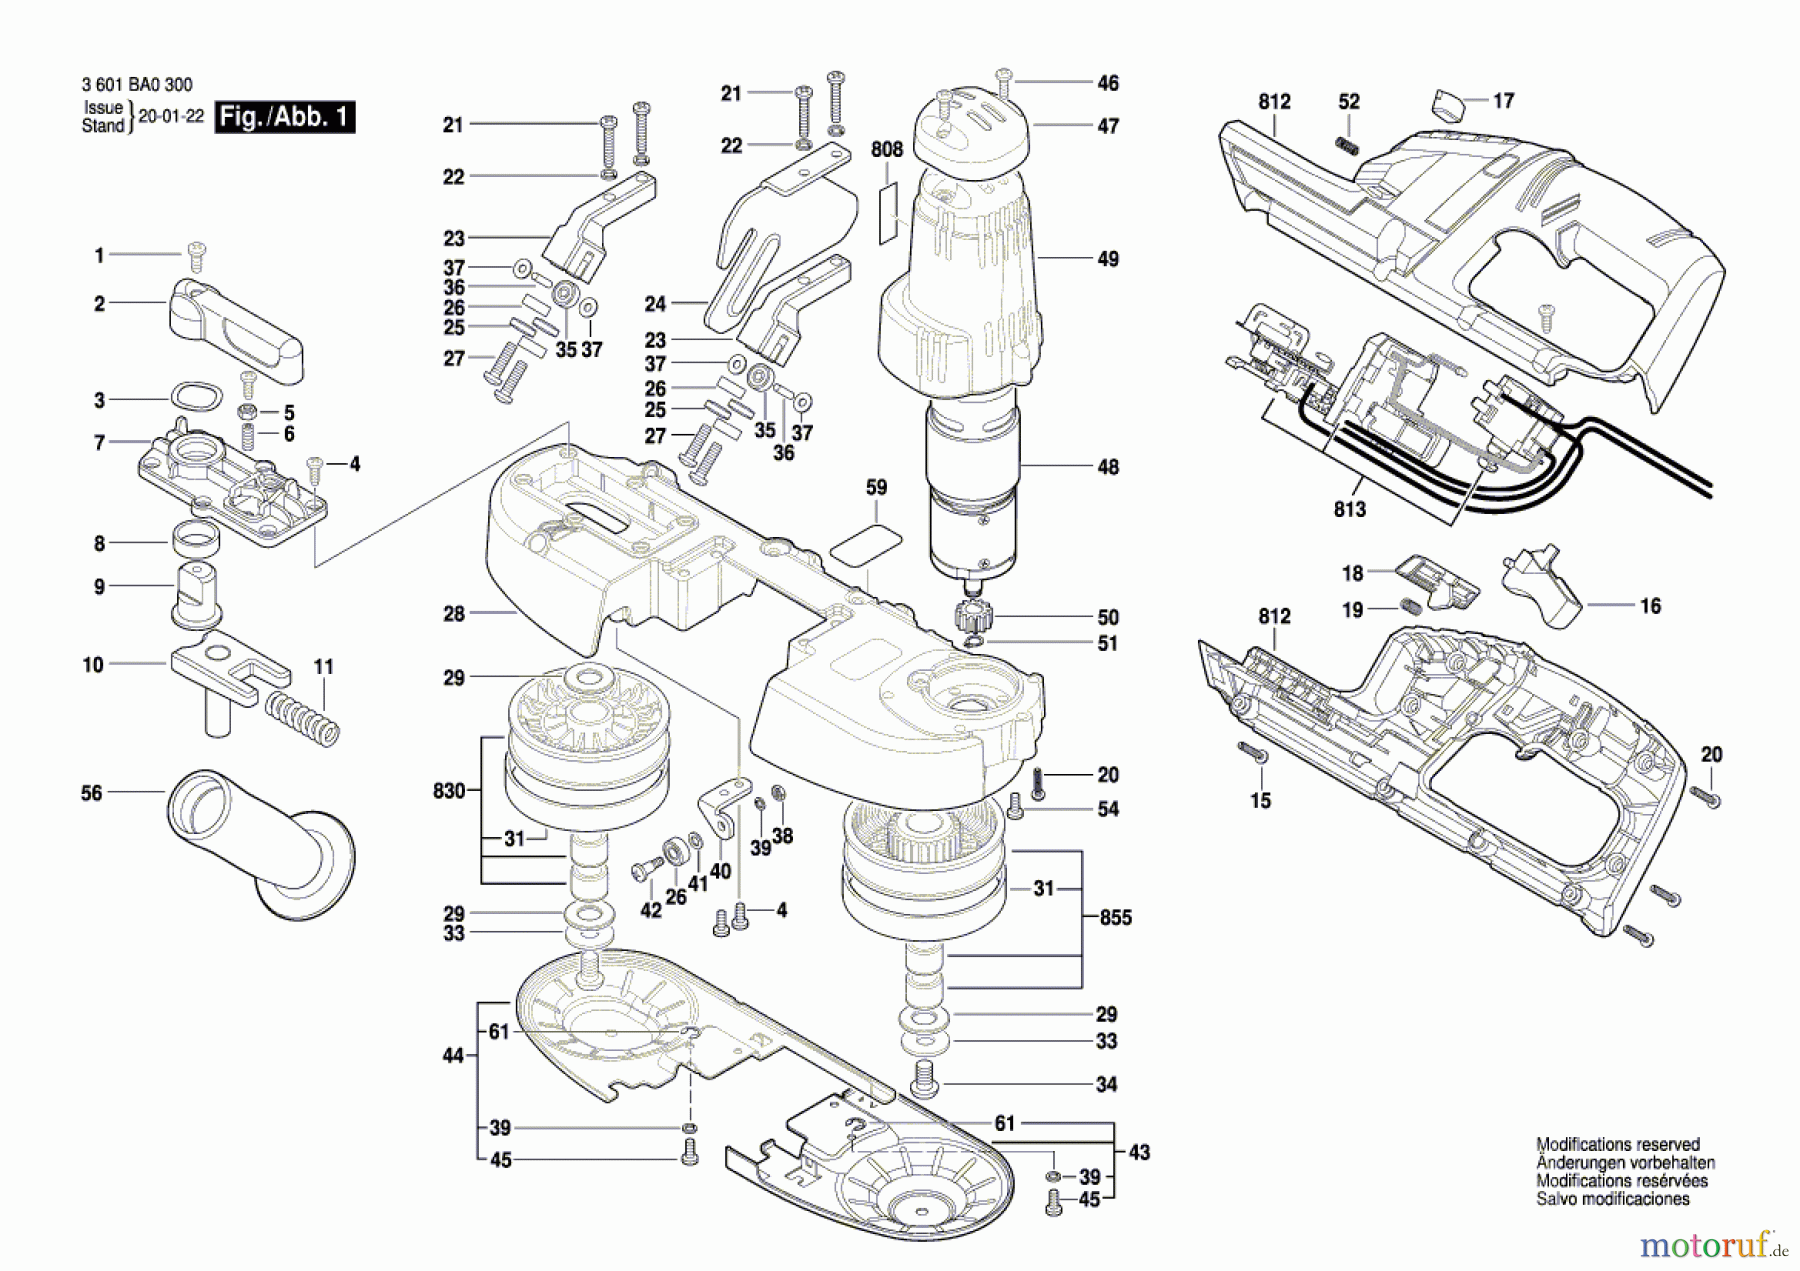  Bosch Werkzeug Bandsägemaschine GCB 18 V-LI Seite 1